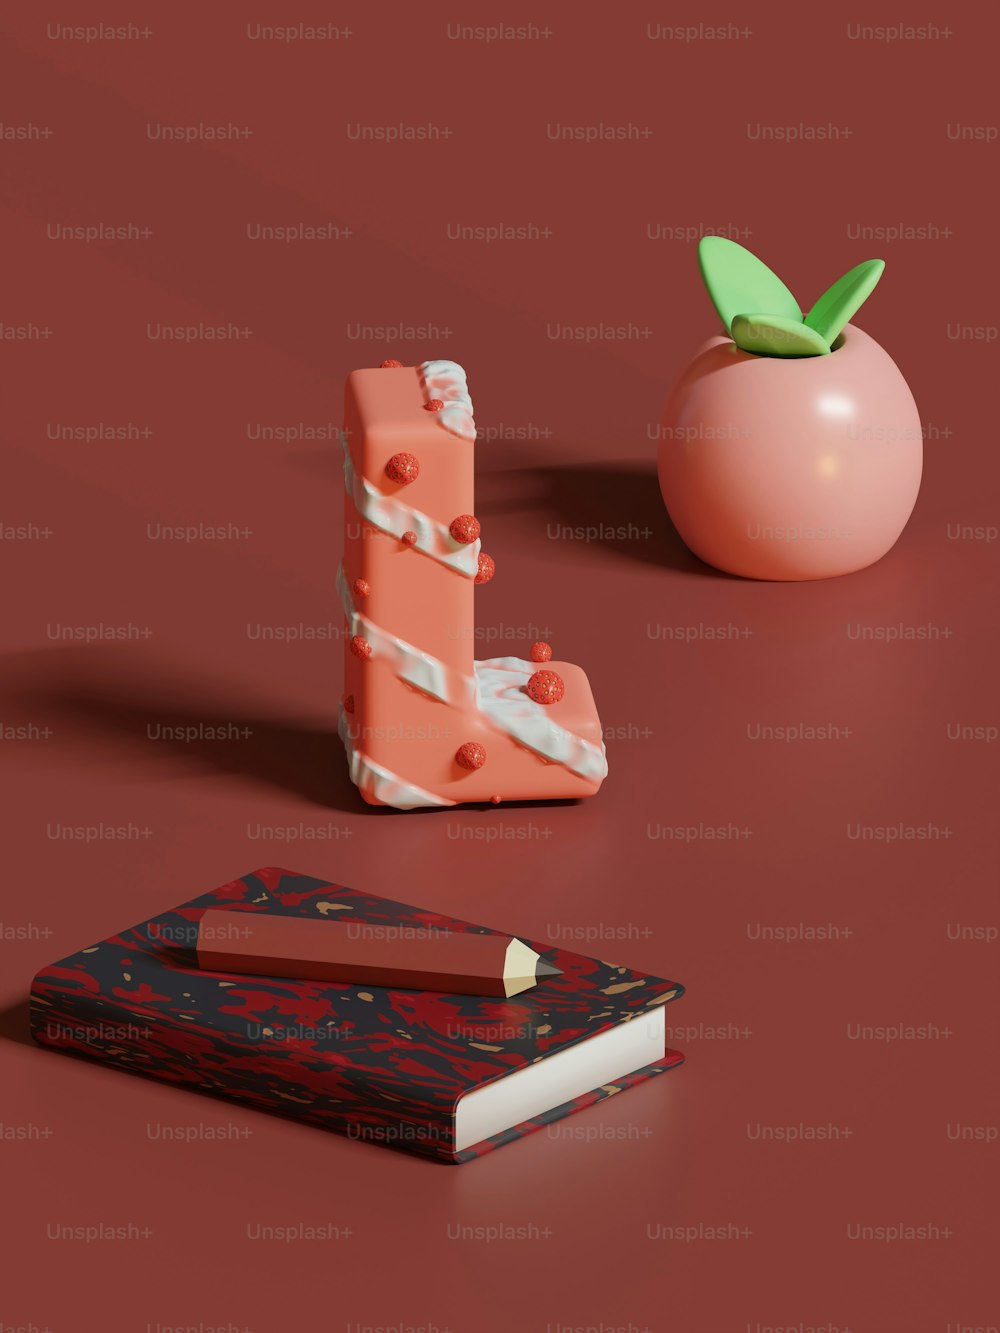 테이블 위의 책 옆에 앉아 있는 과일 조각